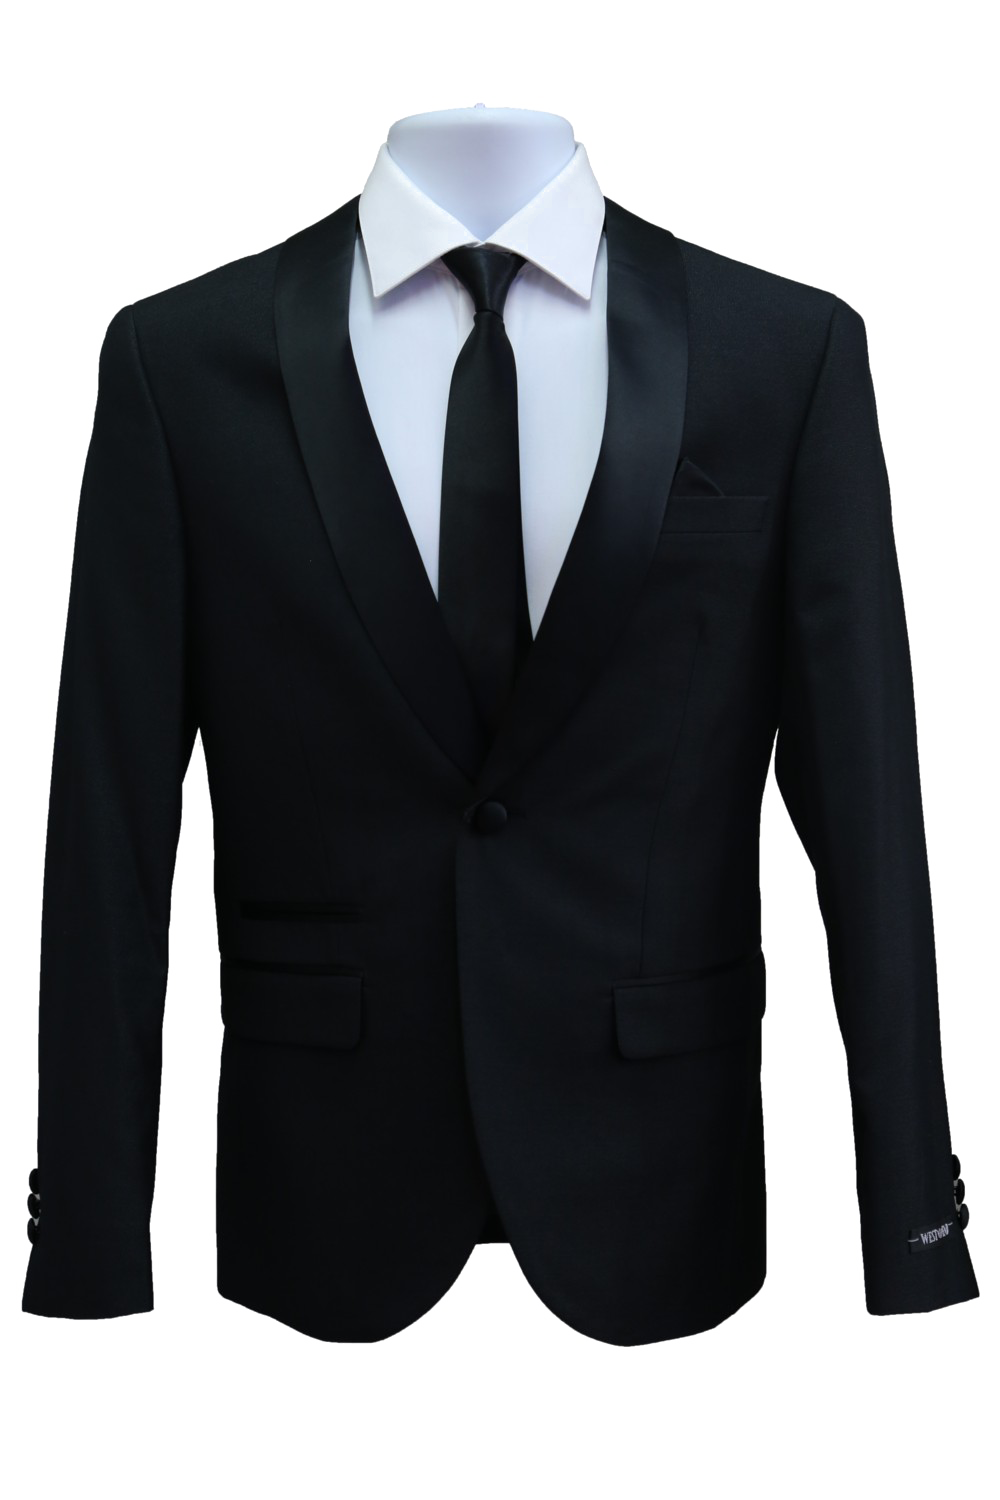 Black Suit PNG Transparent Image | PNG Arts